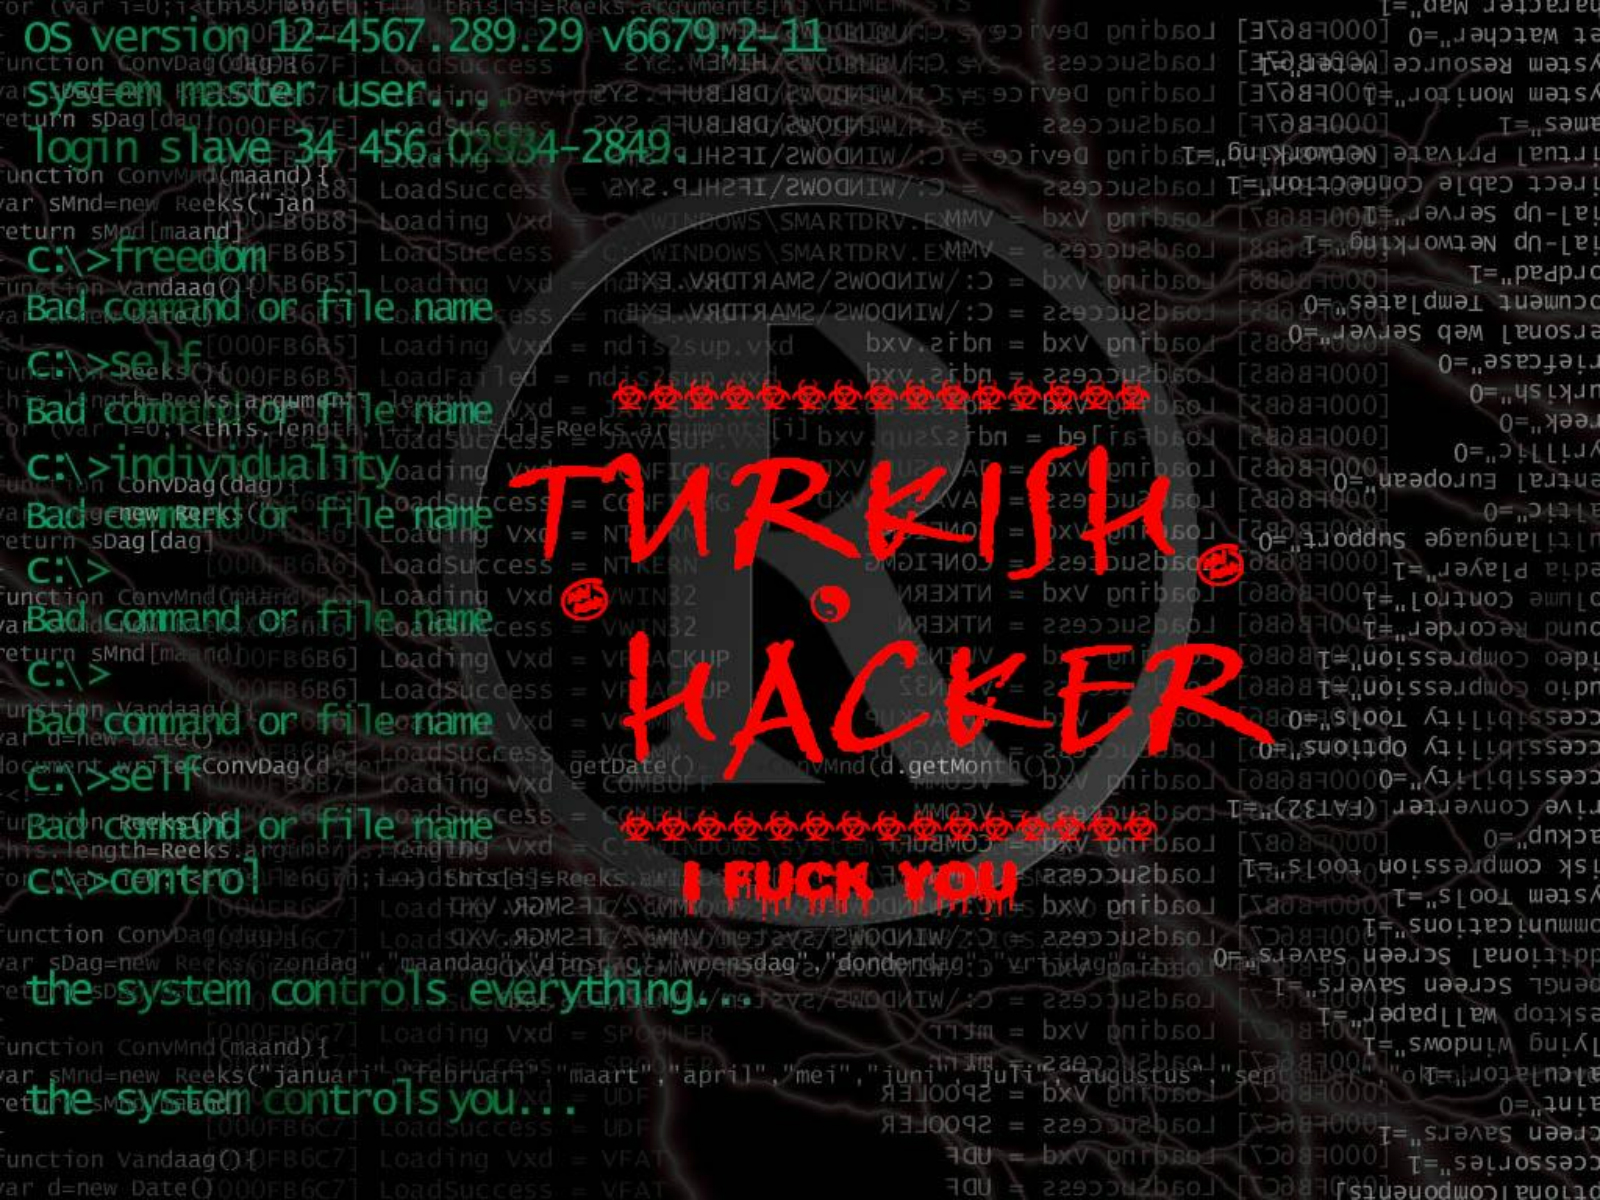 http://3.bp.blogspot.com/-VX_yh-ZI4qI/Tliq7LcTOJI/AAAAAAAACvE/OfB2sJx57D4/s1600/www.Vvallpaper.net_hacker_hack_turkish_hacking_desktop_duvar_arkaplan_background.jpg